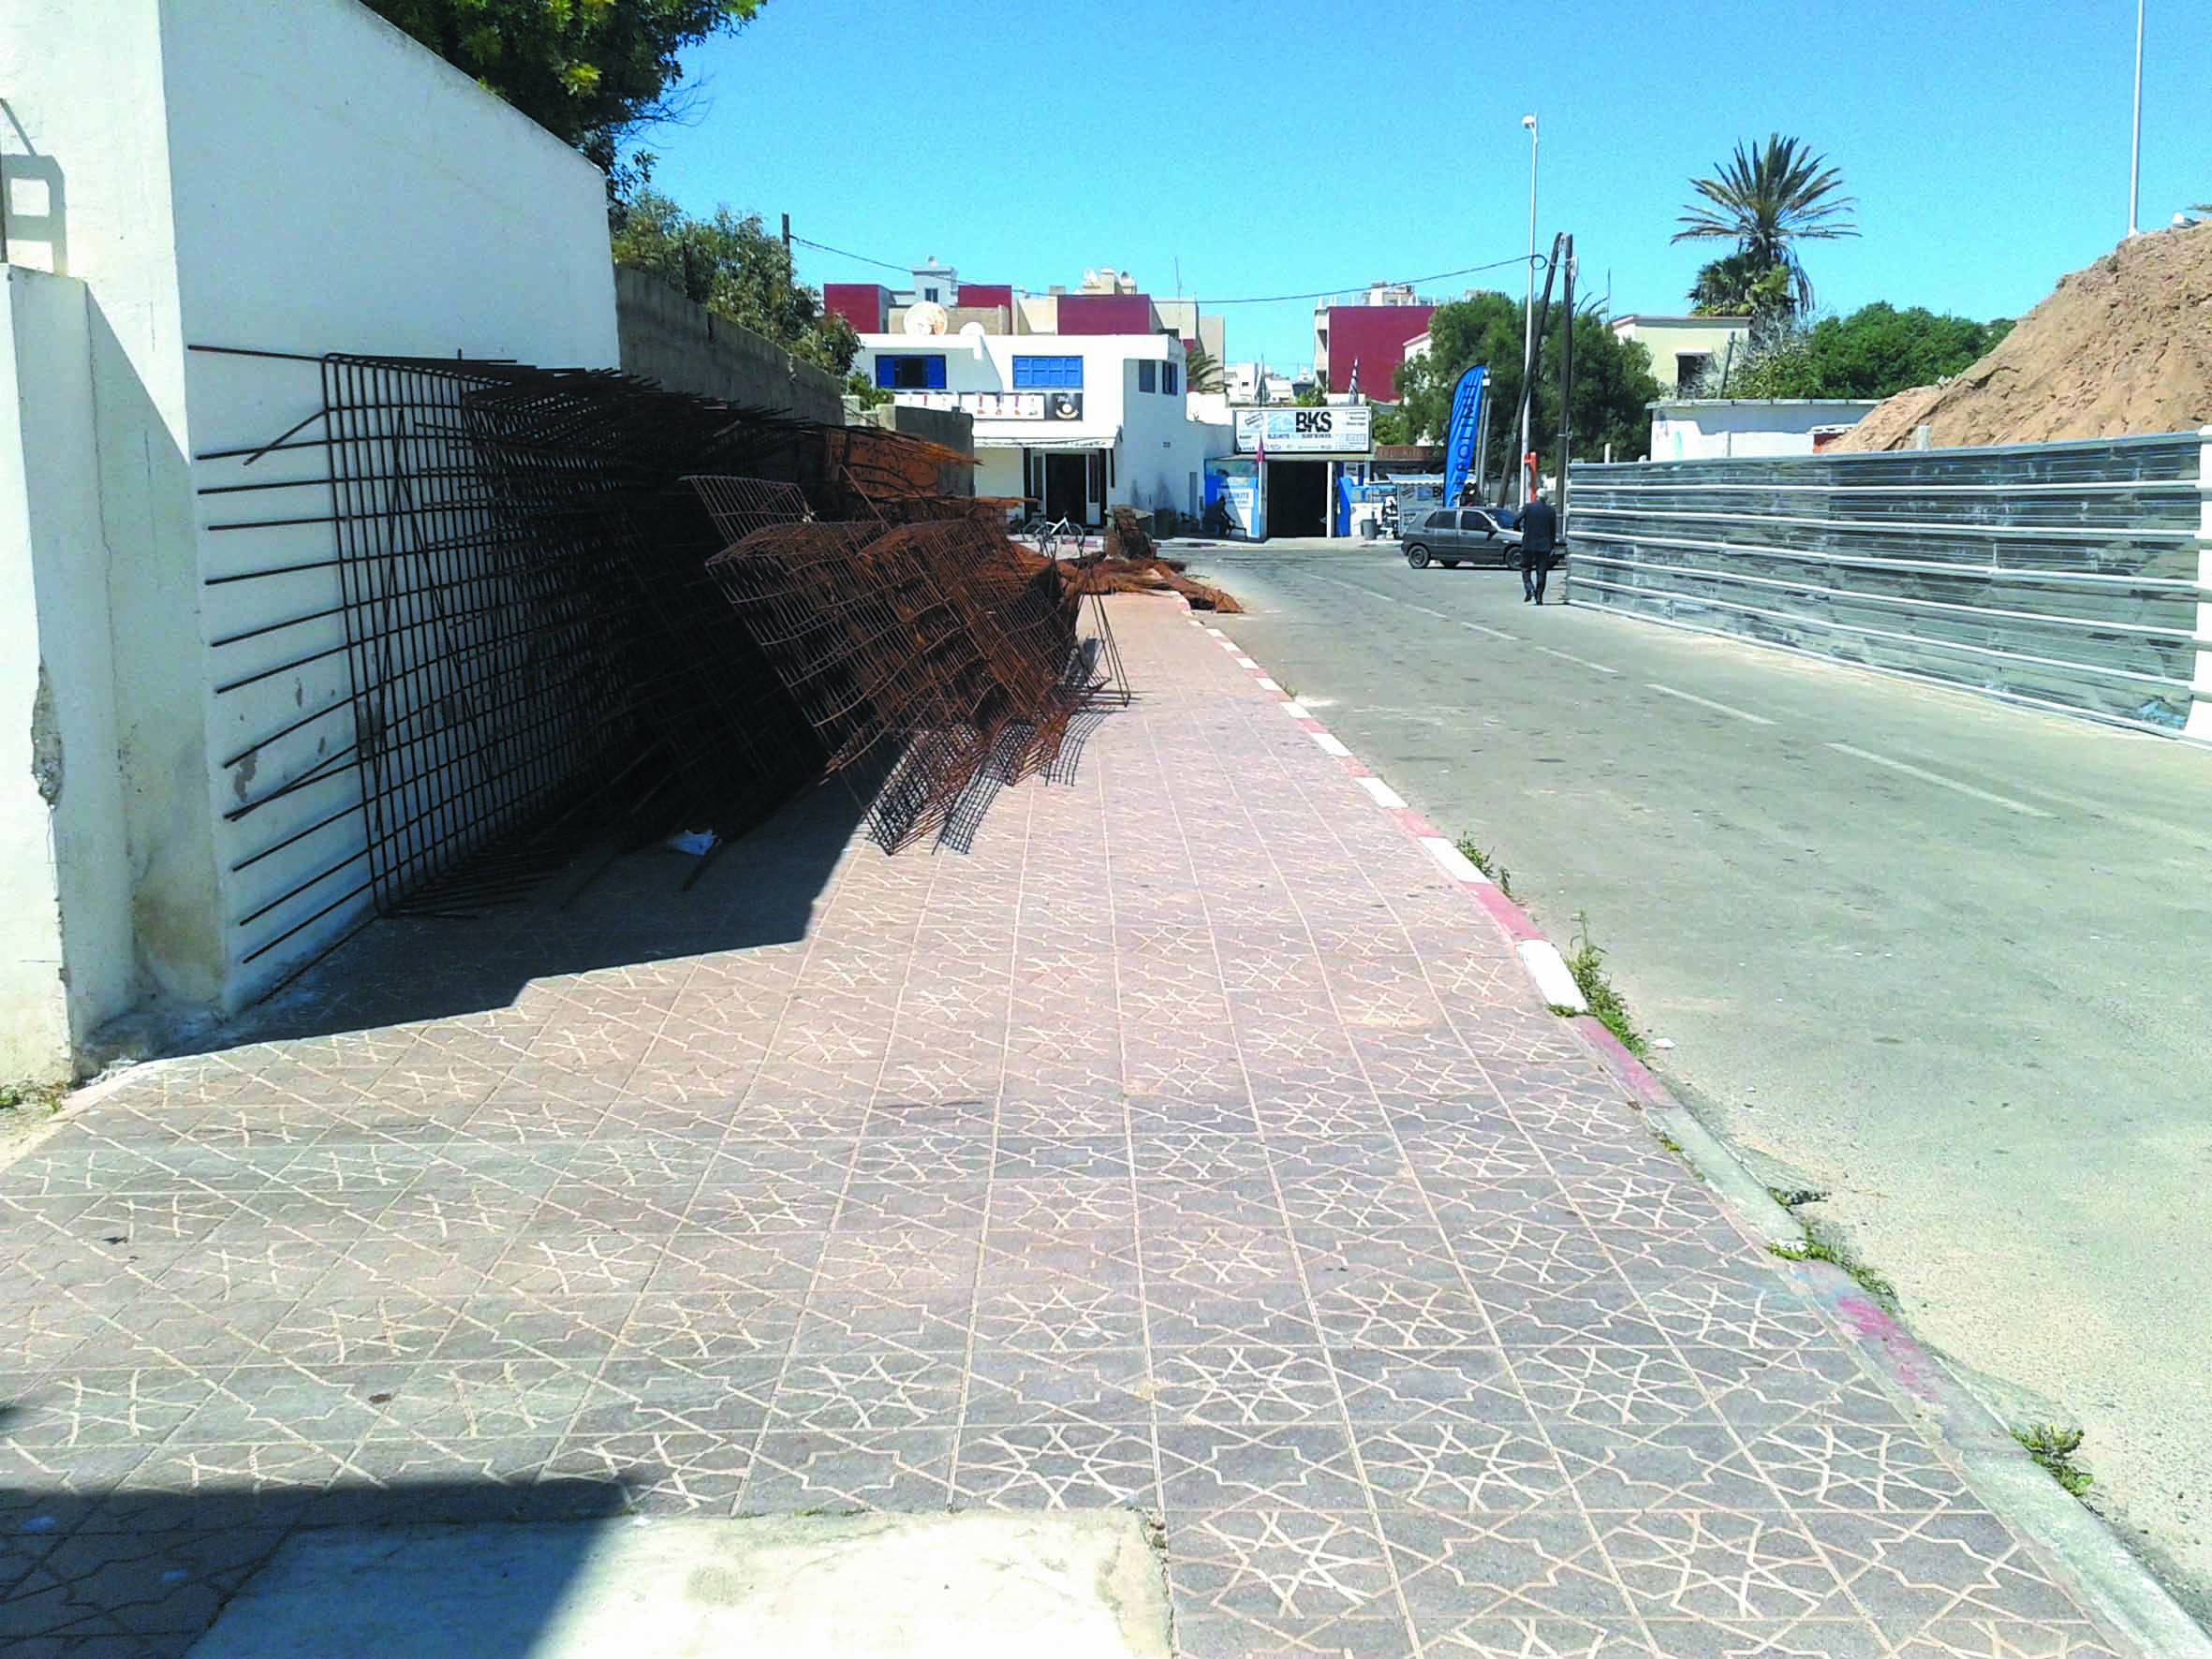 Les chantiers de construction squattent l’espace public à Essaouira